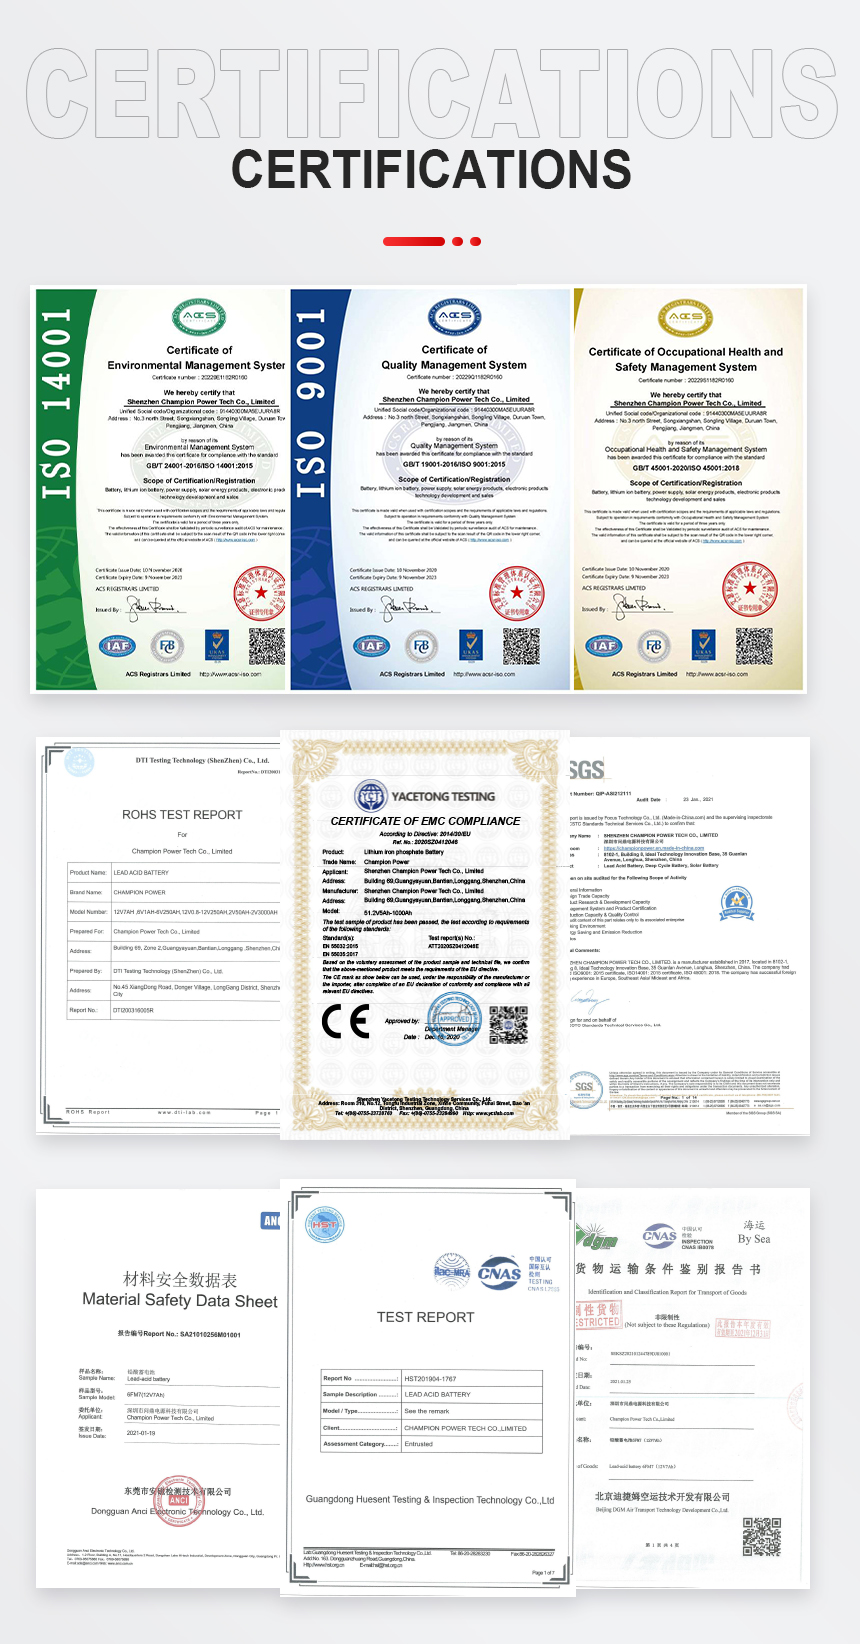 GFM1000 Certifications